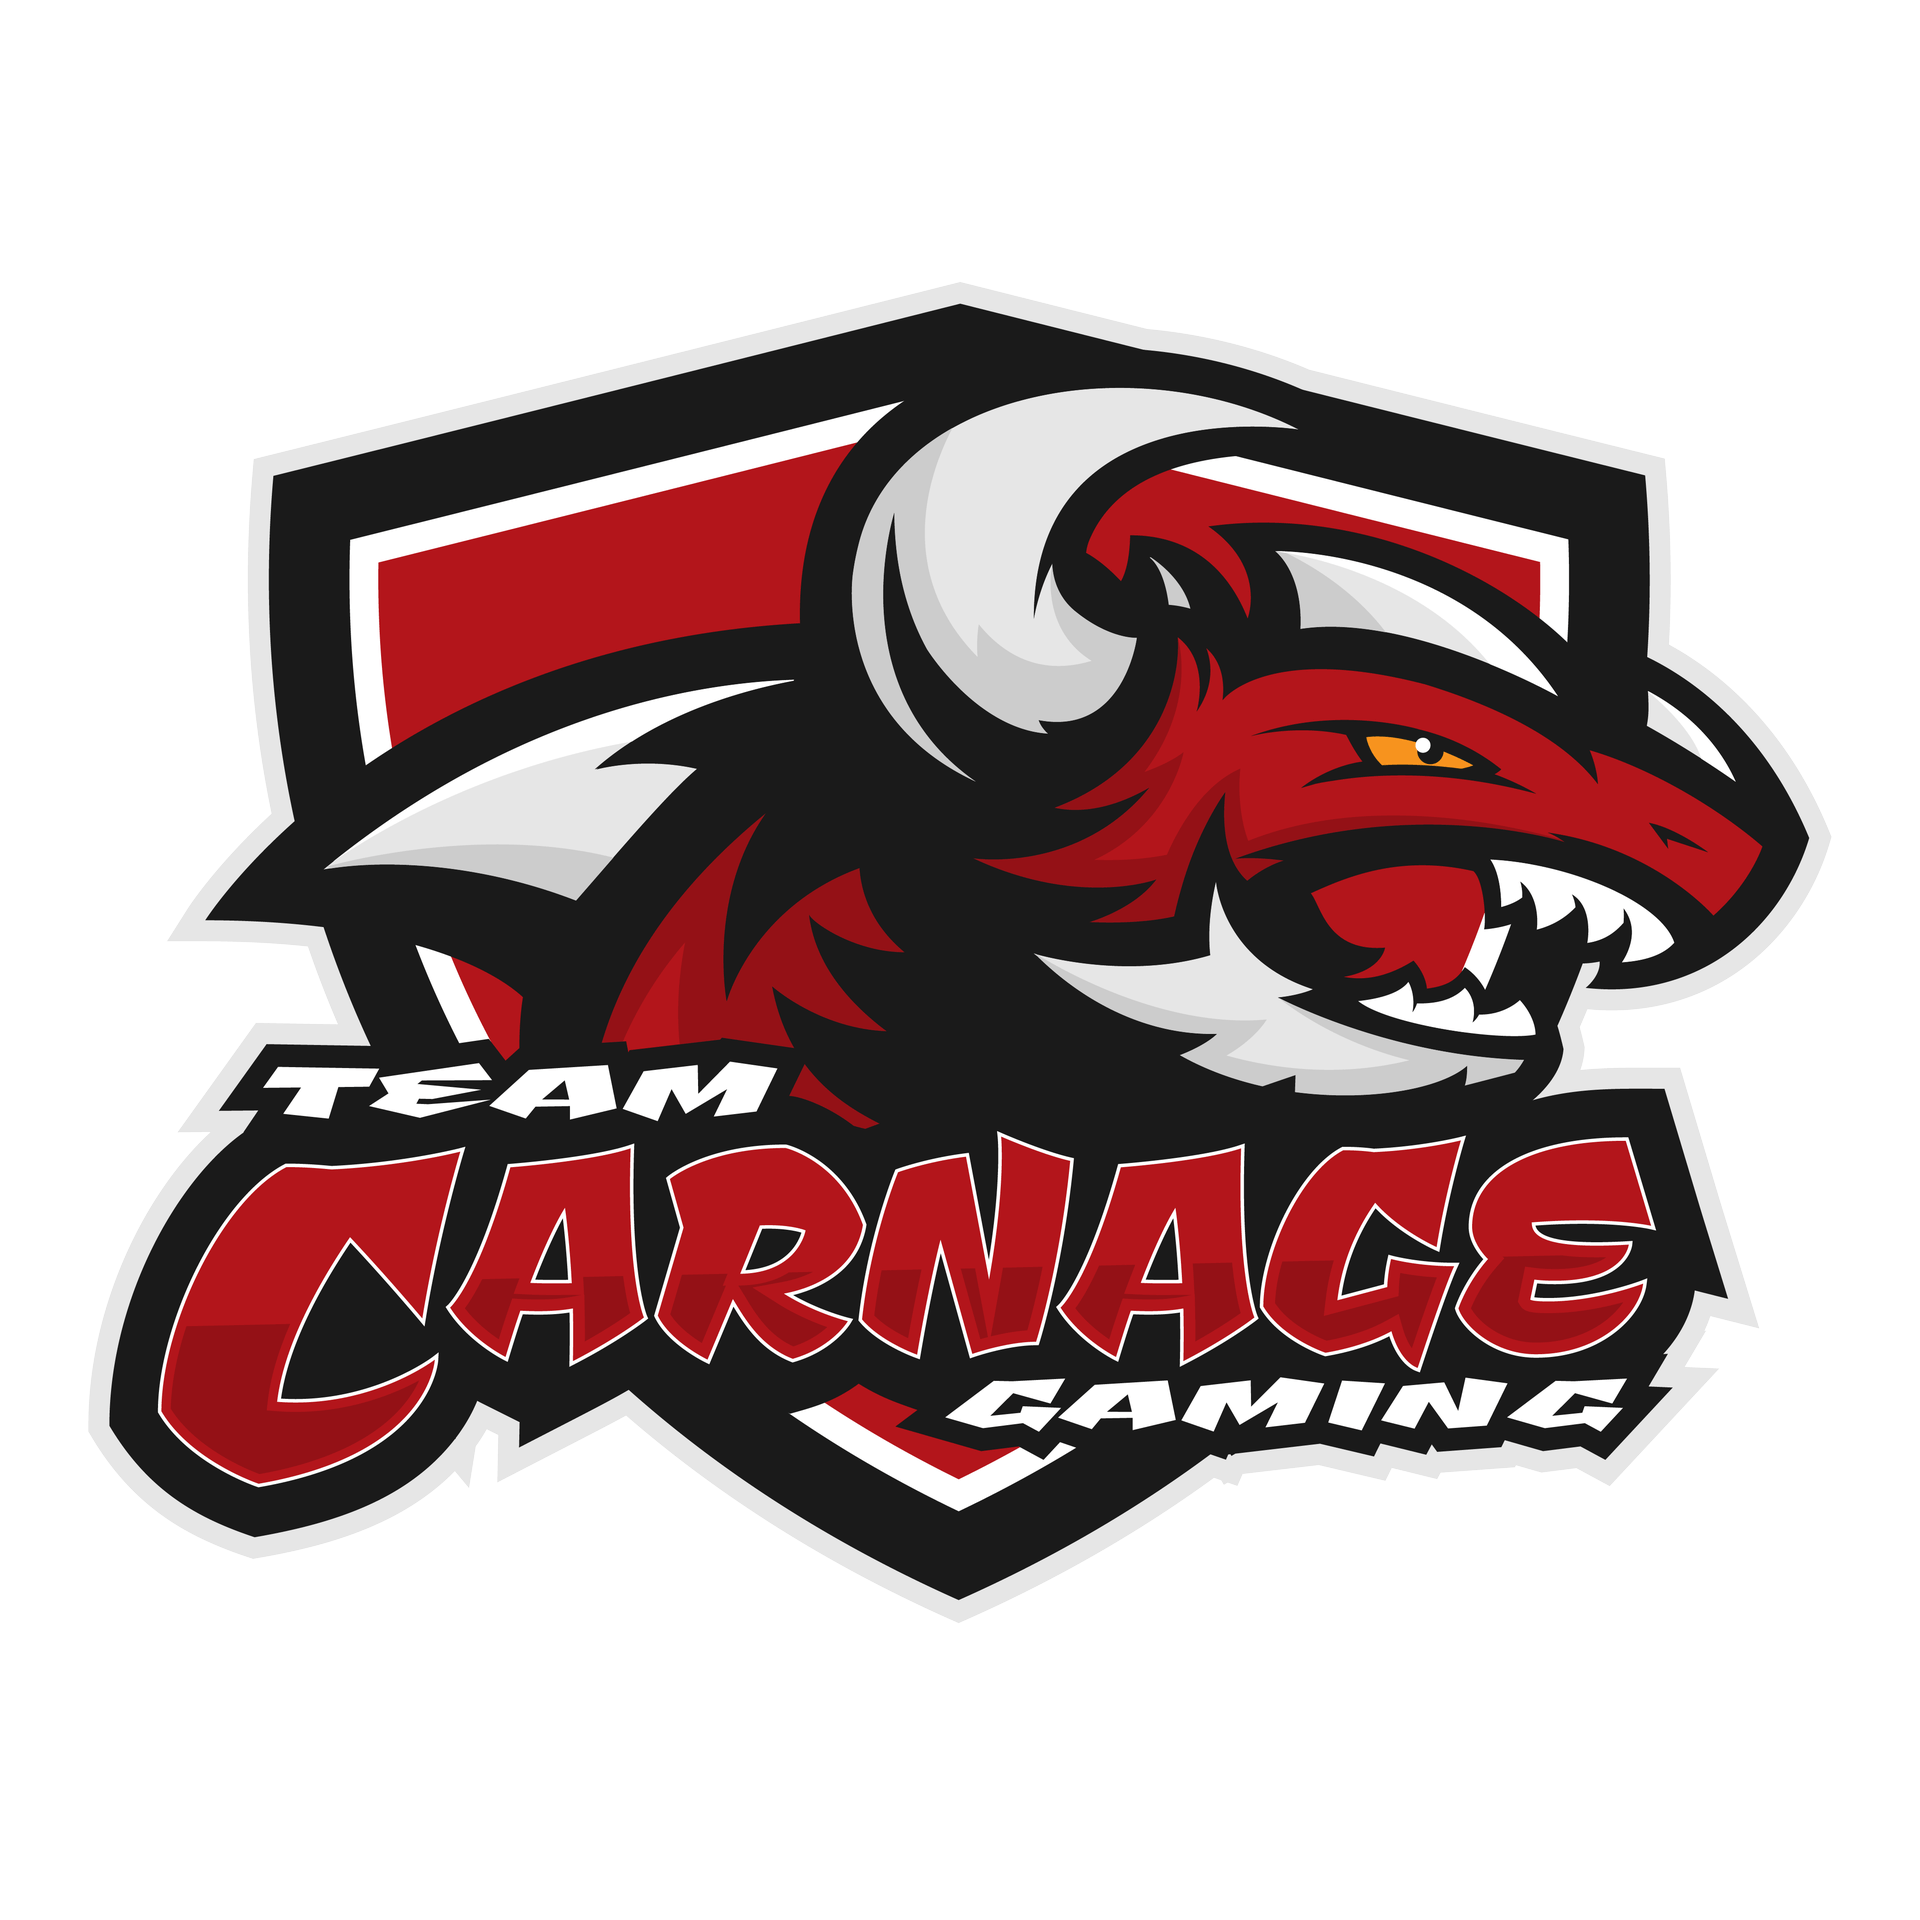 MLG Team Logo - Electronic Sports - Team Carnage Gaming, LLC.